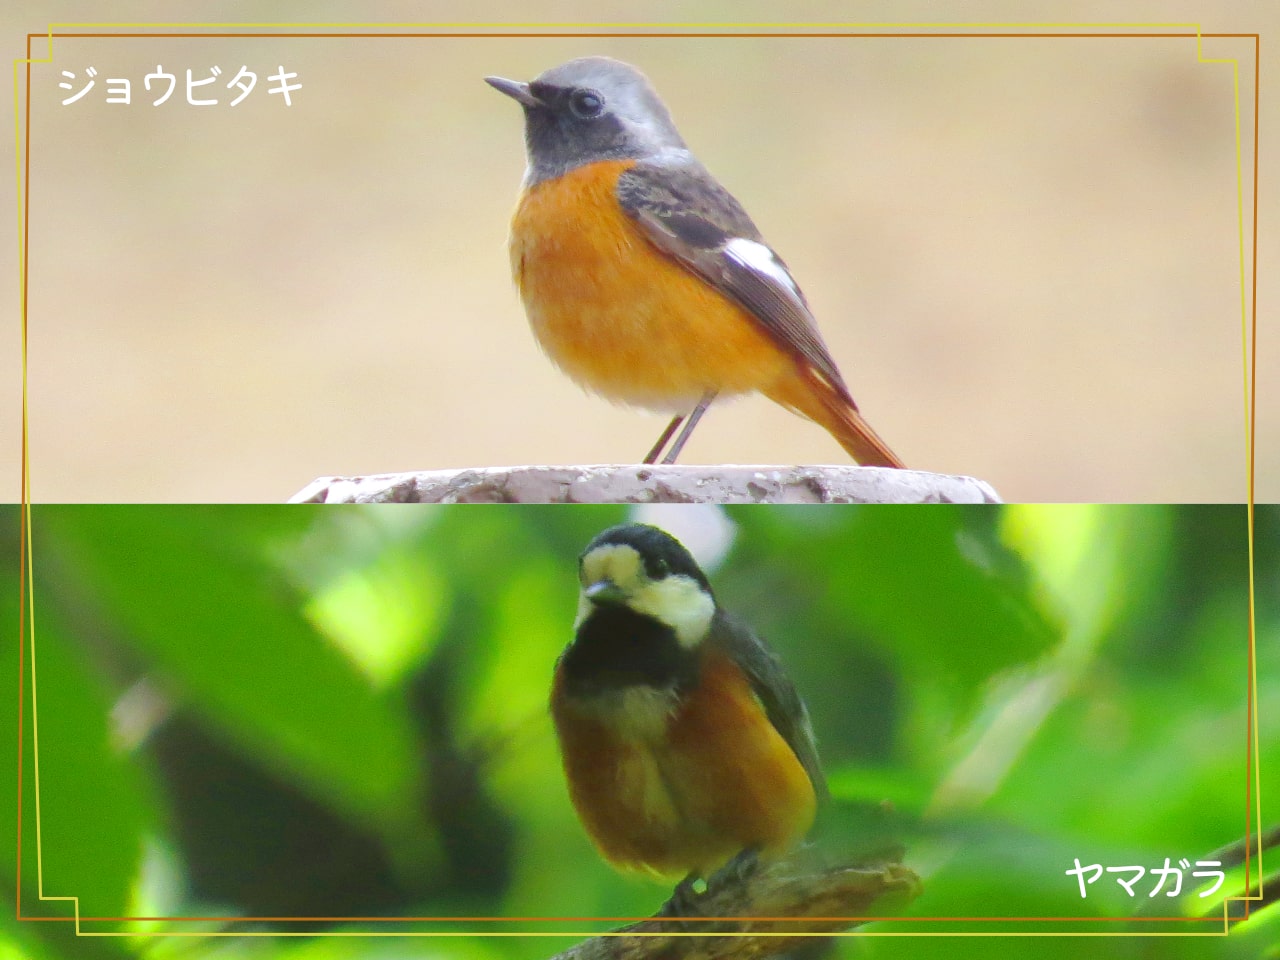 ヤマガラとヤマガラに似ている鳥ジョウビタキを見比べた写真